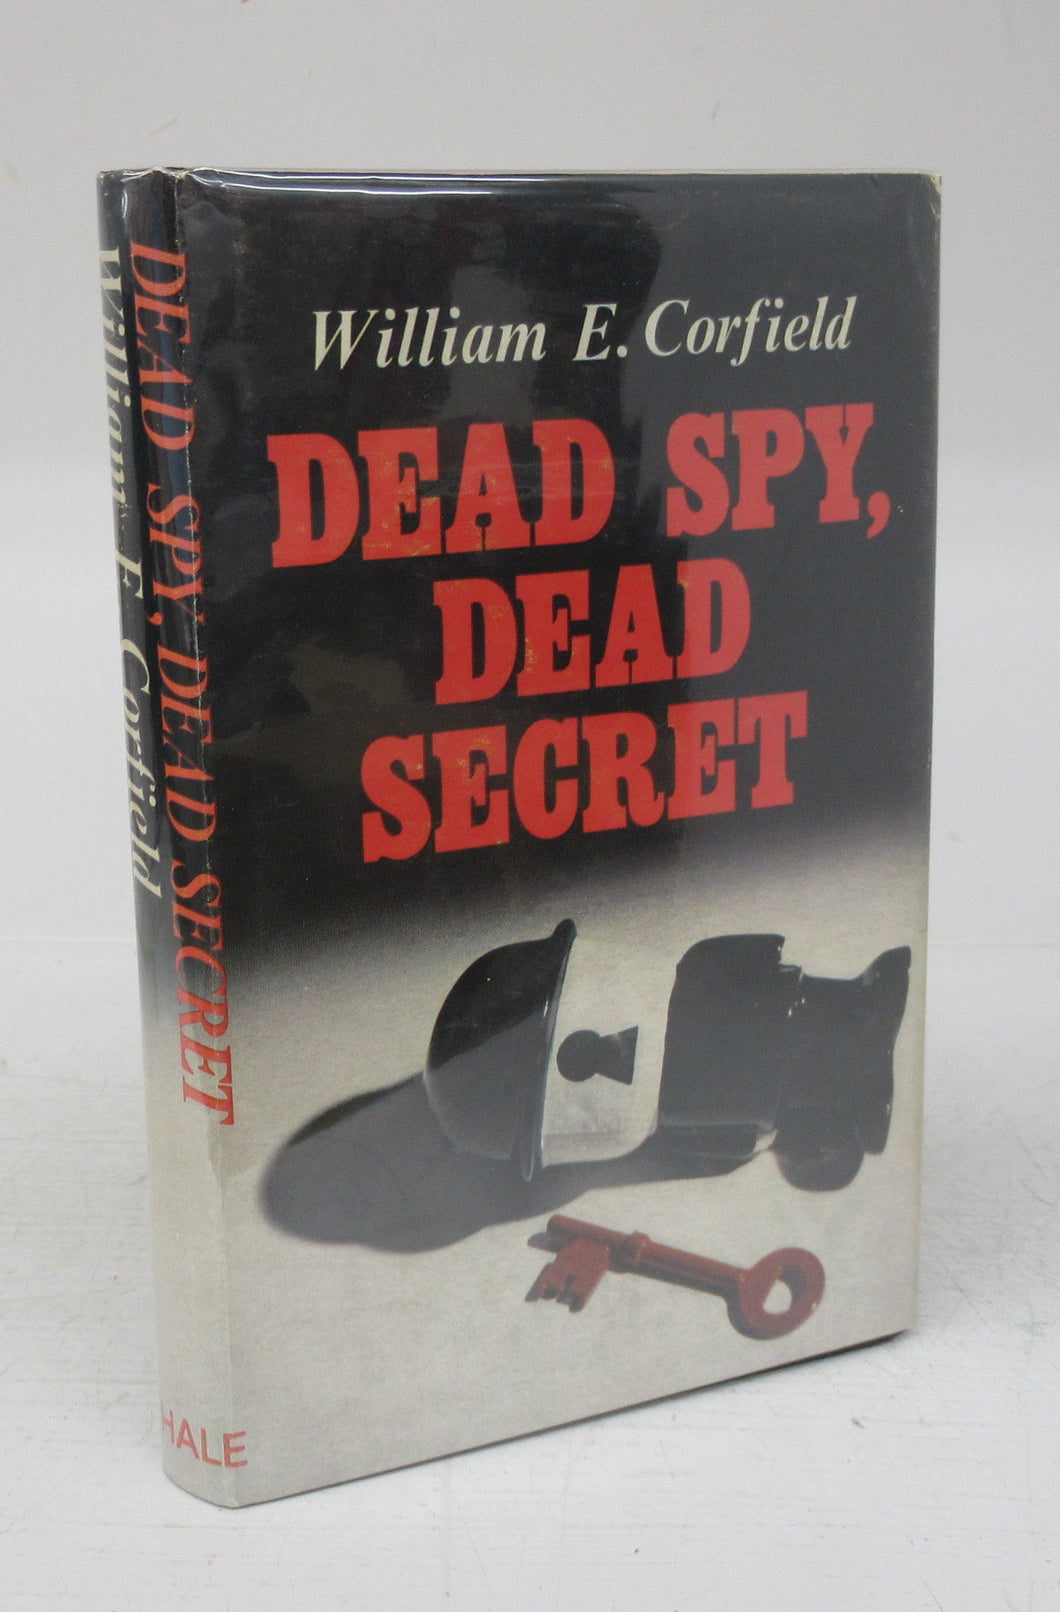 Dead Spy, Dead Secret